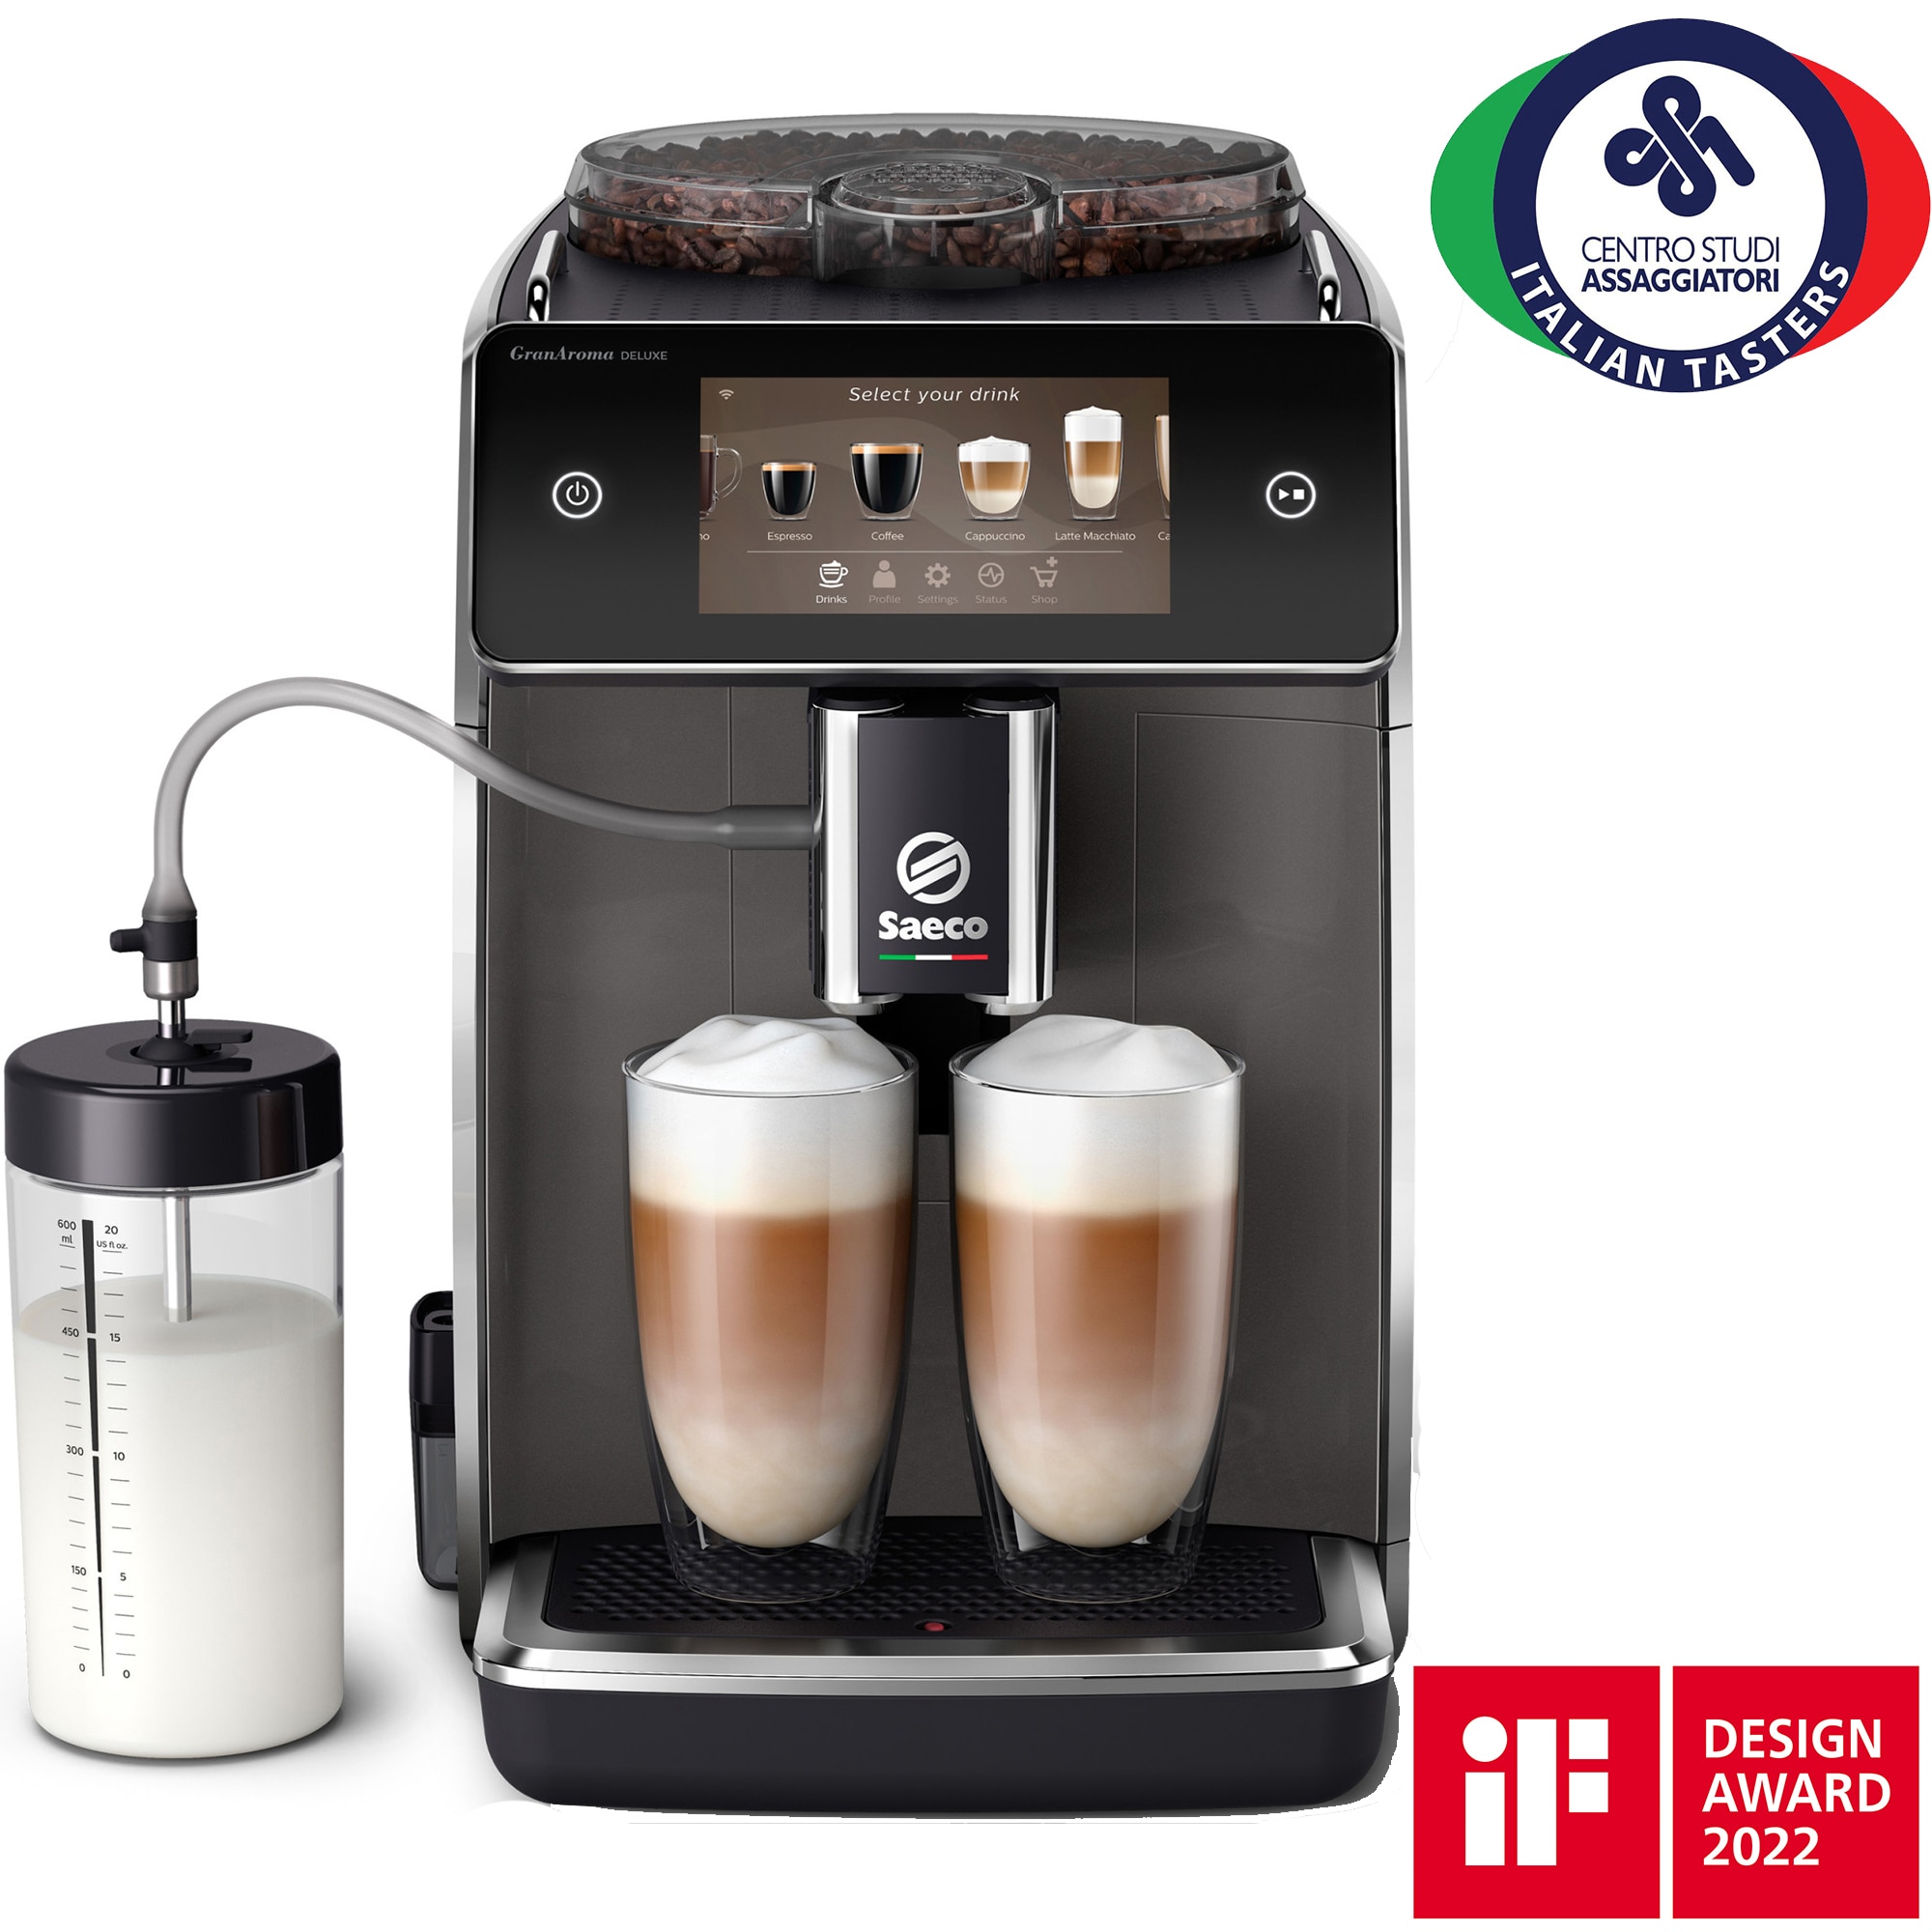 Fotografie Espressor automat Saeco GranAroma Deluxe SM6682/10, 18 specialitati de cafea, ecran cu touch color 5", 6 profiluri de utilizator, 3 profiluri de gust presetate cu CoffeeMaestro, conectivitate, rasnita ceramica cu 12 trepte de macinare, negru